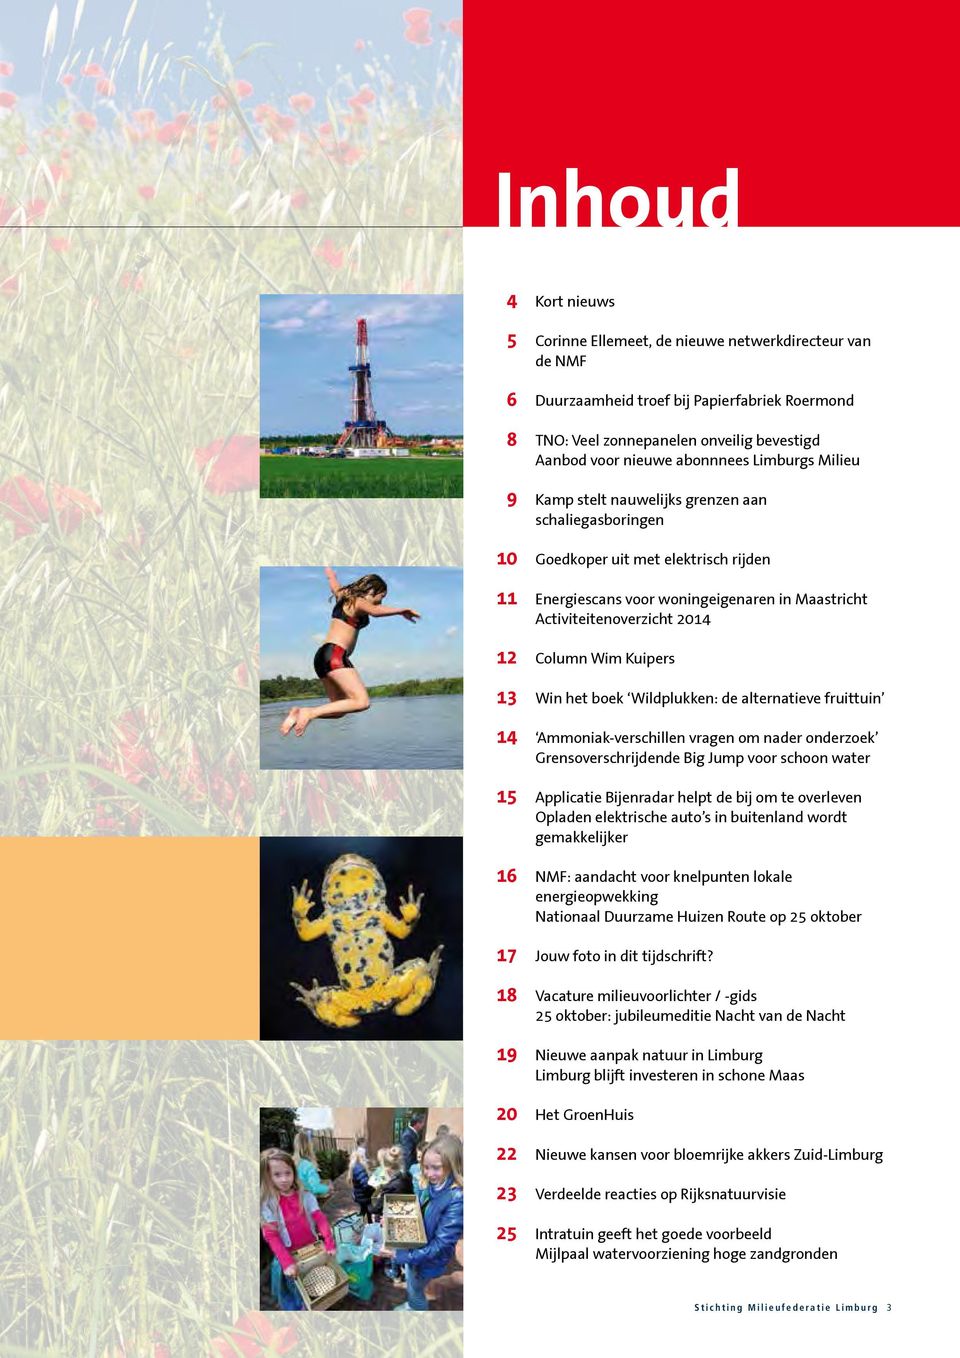 Wim Kuipers 13 Win het boek Wildplukken: de alternatieve fruittuin 14 Ammoniak-verschillen vragen om nader onderzoek Grensoverschrijdende Big Jump voor schoon water 15 Applicatie Bijenradar helpt de